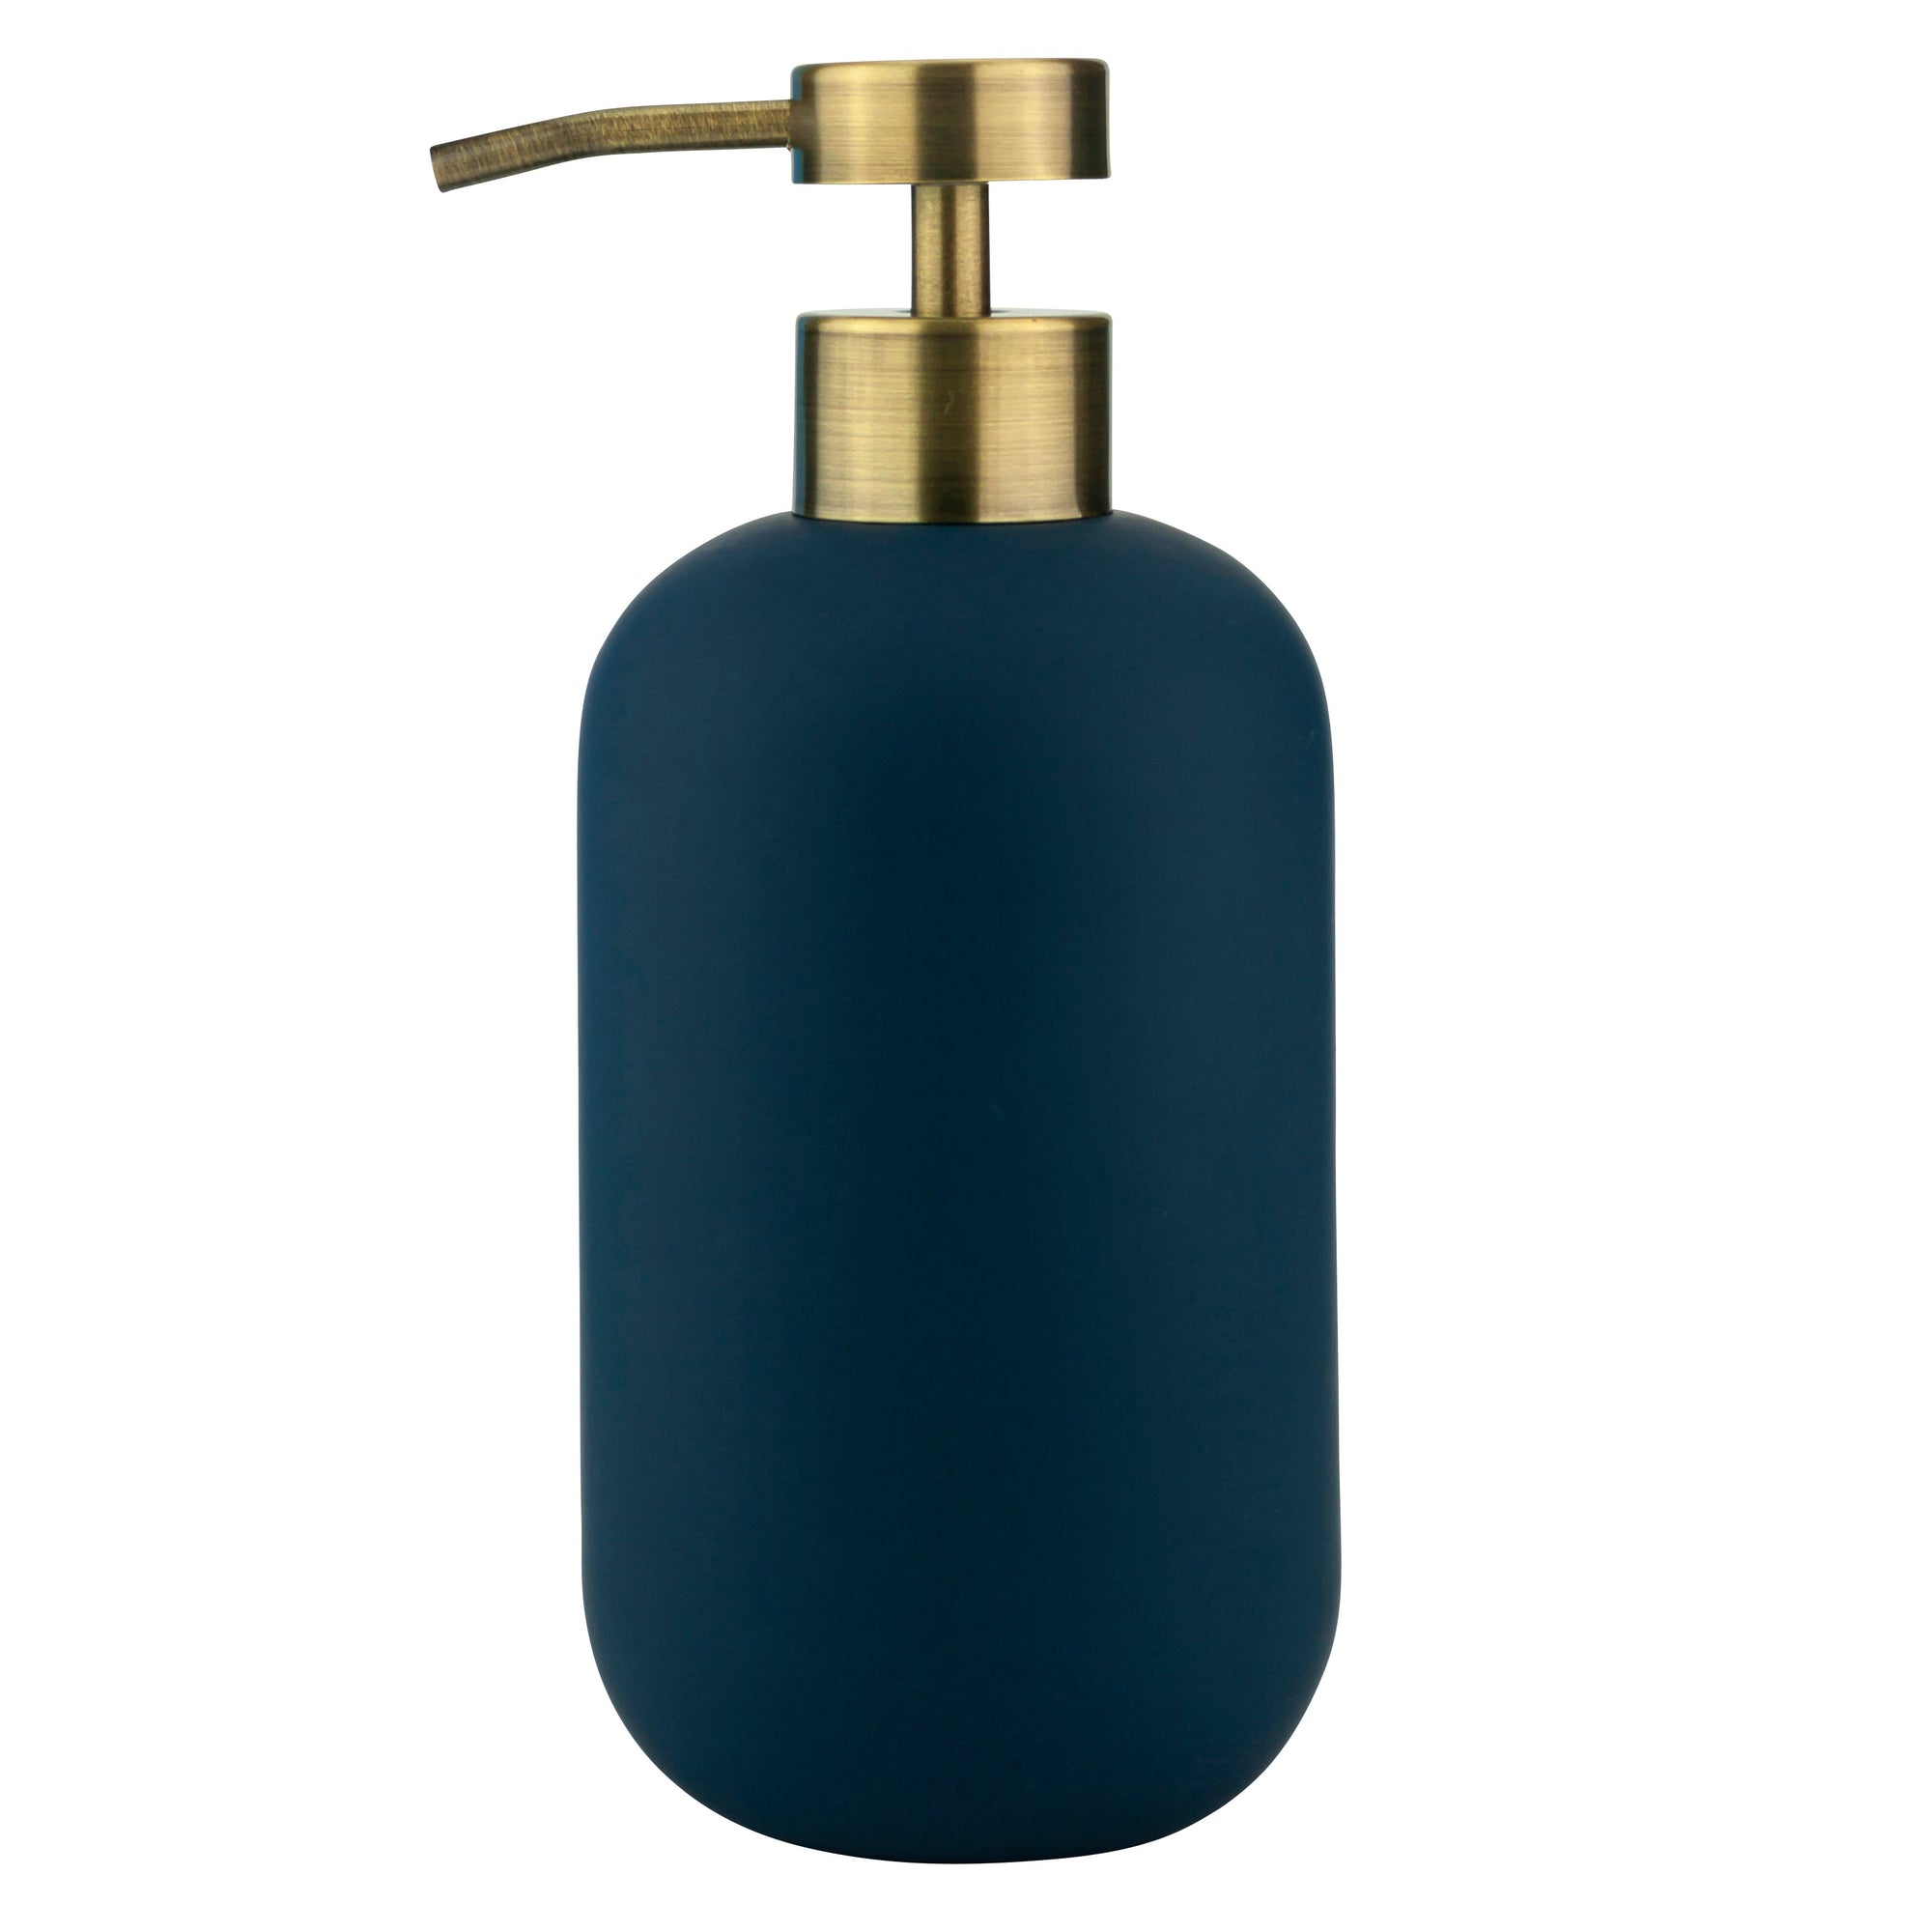 LOTUS Soap Dispenser- Midnight Blue